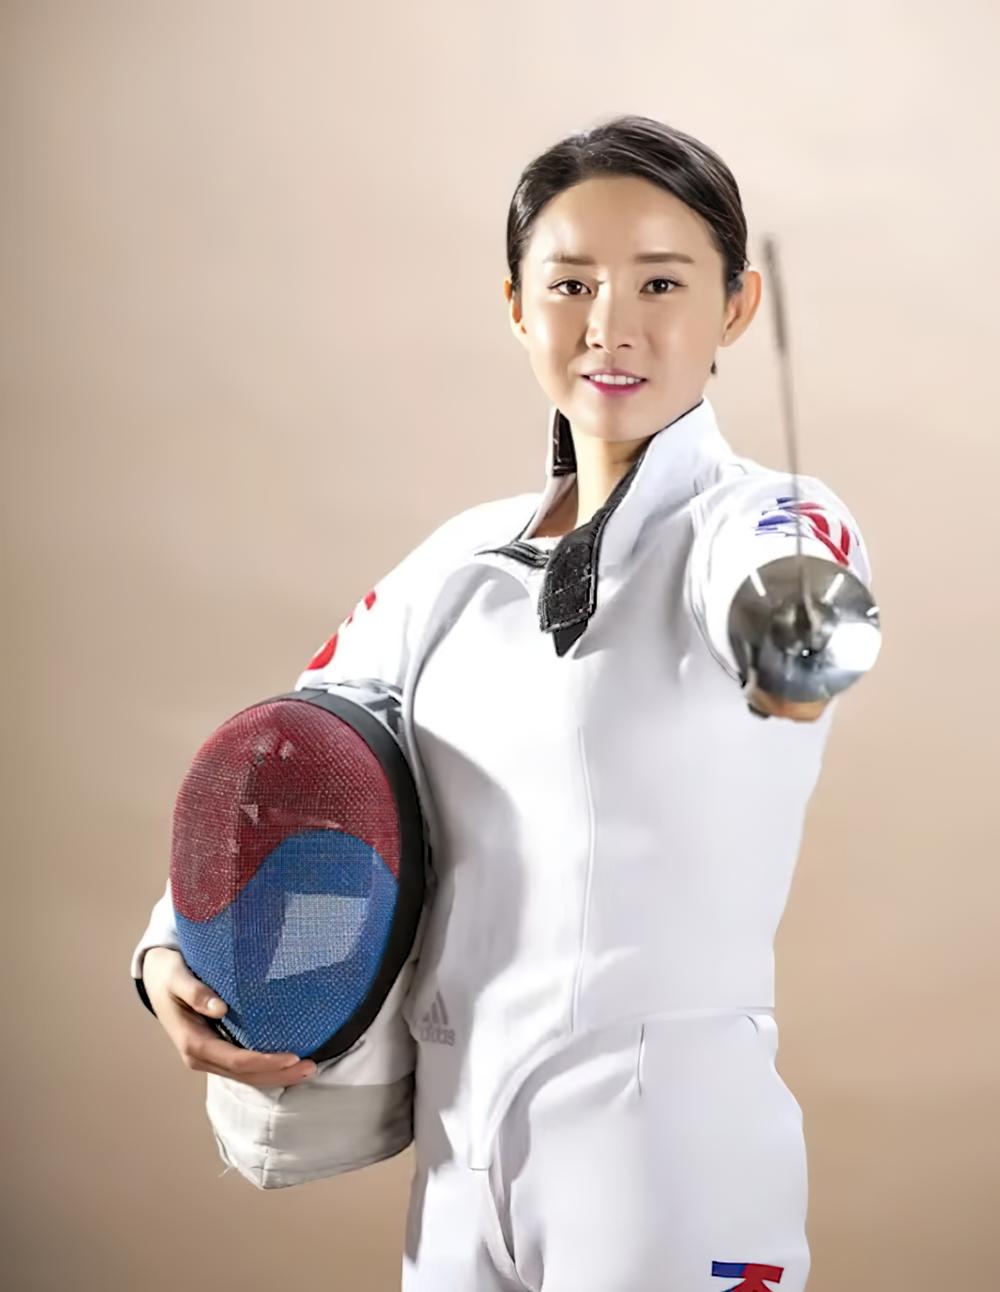 Скандалы, интриги, расследования: жених южнокорейской спортсменки оказался женщиной